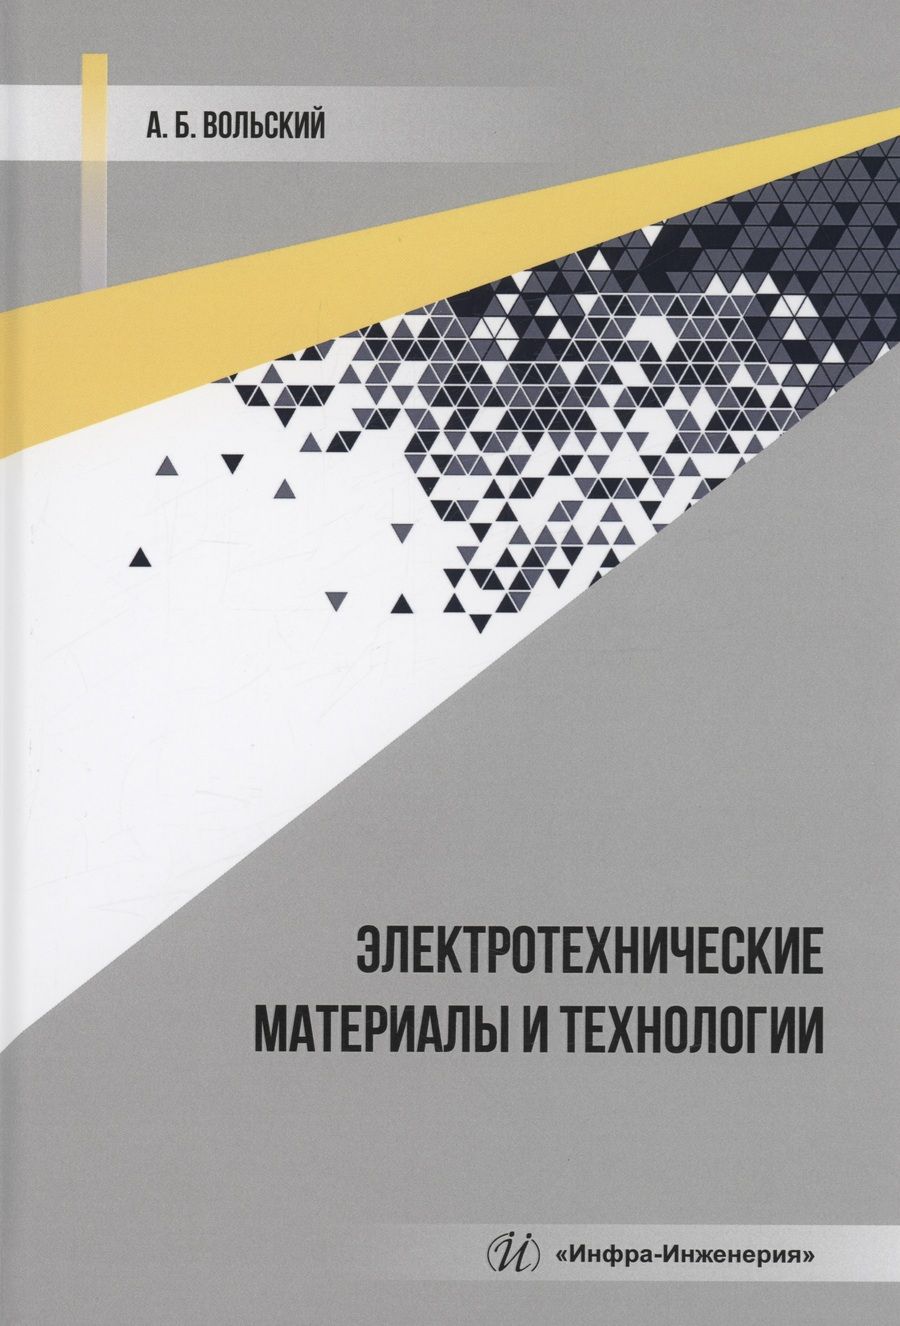 Обложка книги "Вольский: Электротехнические материалы и технологии. Учебник"